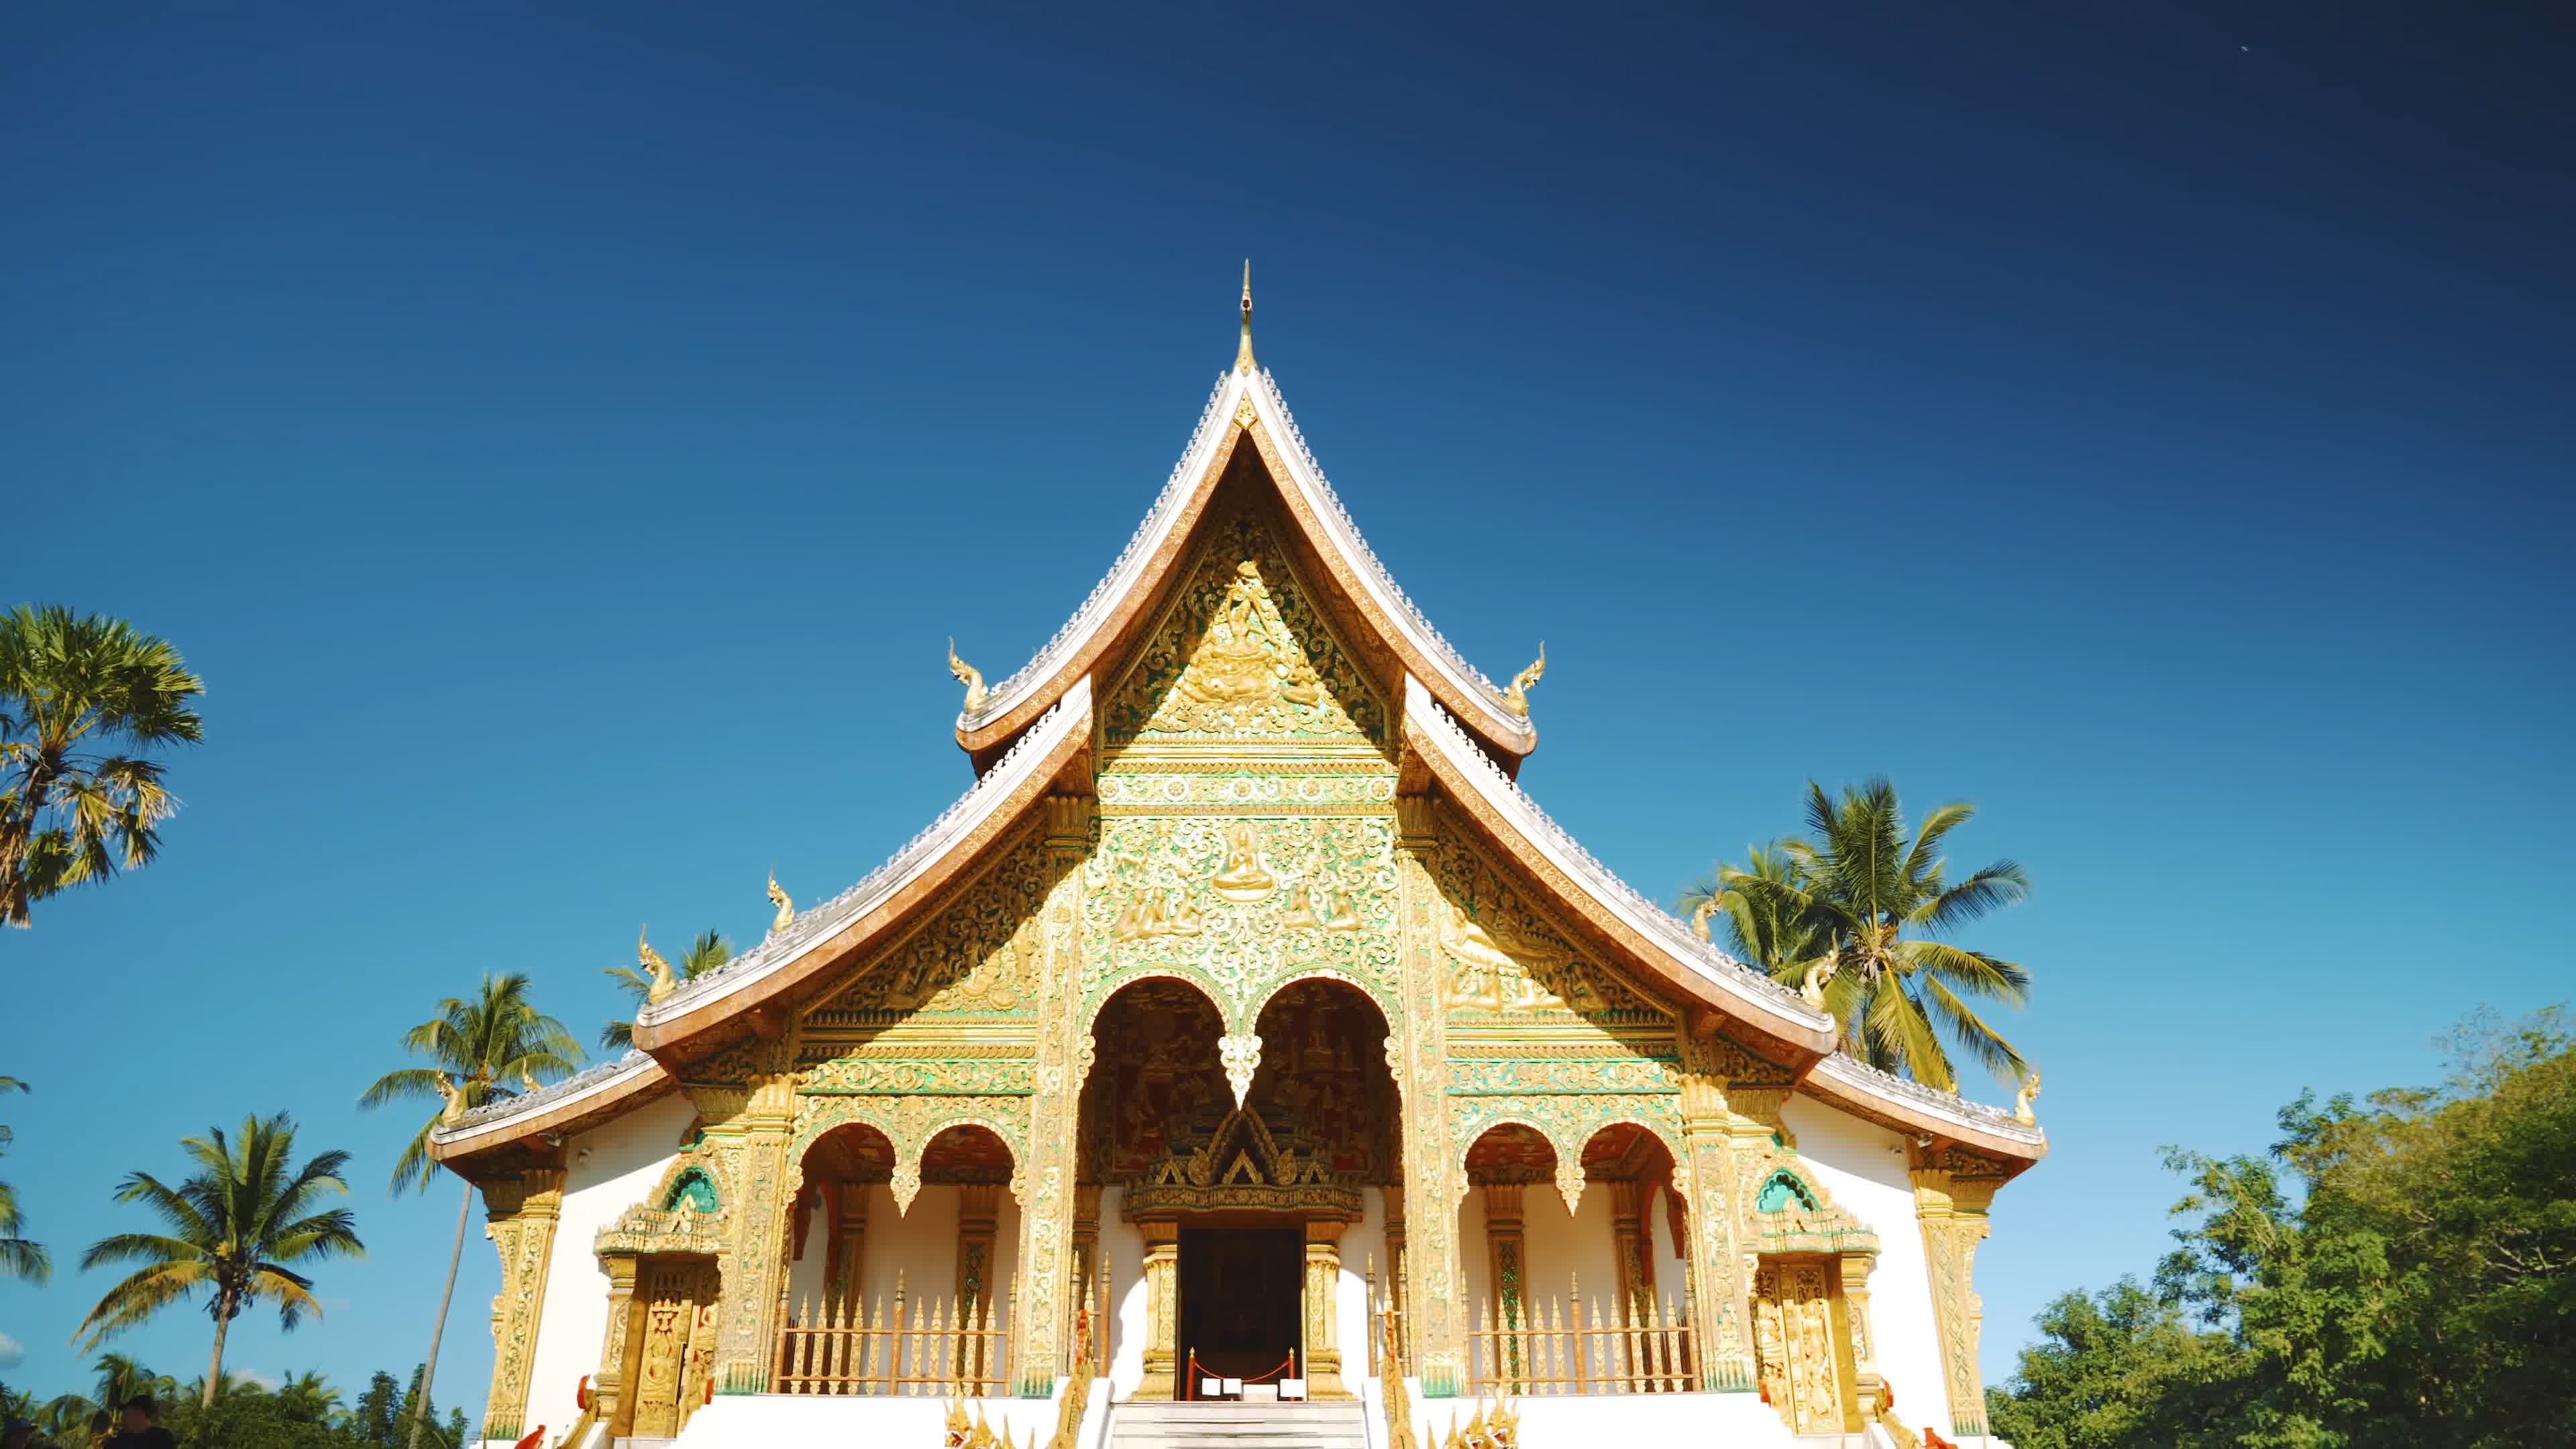 老挝文旅 的想法: 老挝旅游 | 世界文化遗产：瓦普庙 印度支… - 知乎